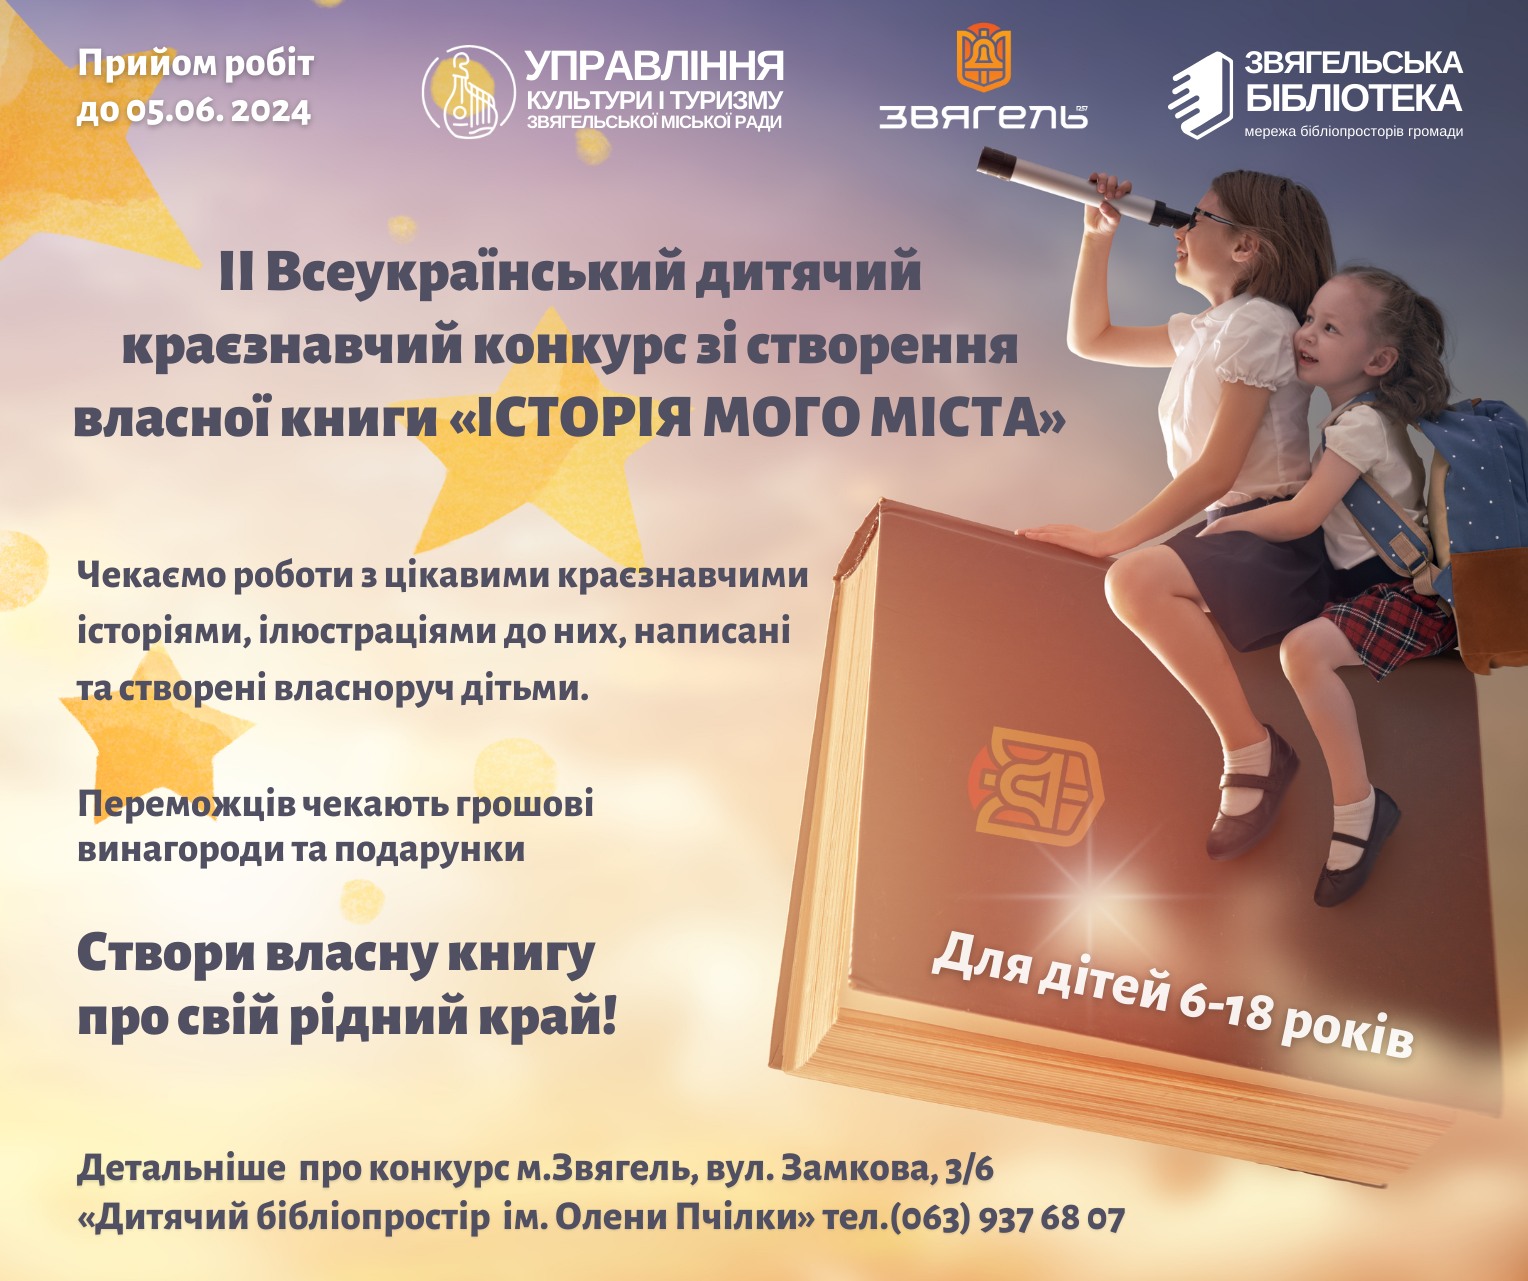 ІІ Всеукраїнський дитячий краєзнавчий конкурс зі створення власної книги “Історія мого міста”